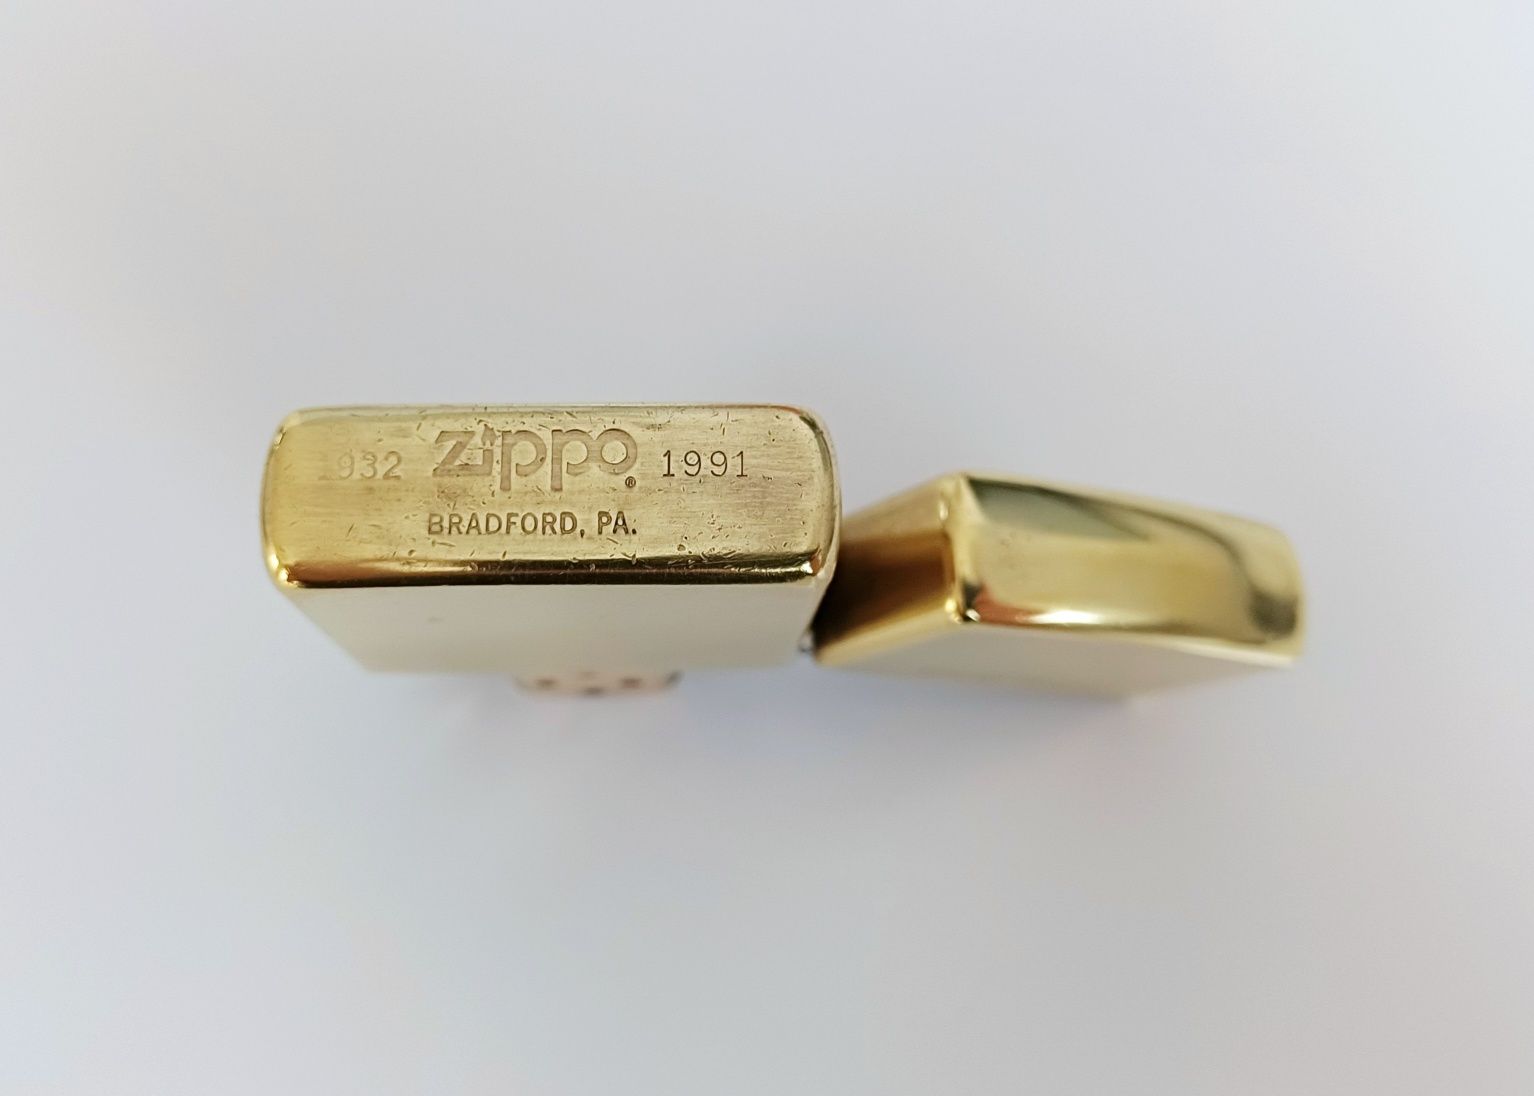 Złota zippo Solid Brass z 1991 roku jak nowa